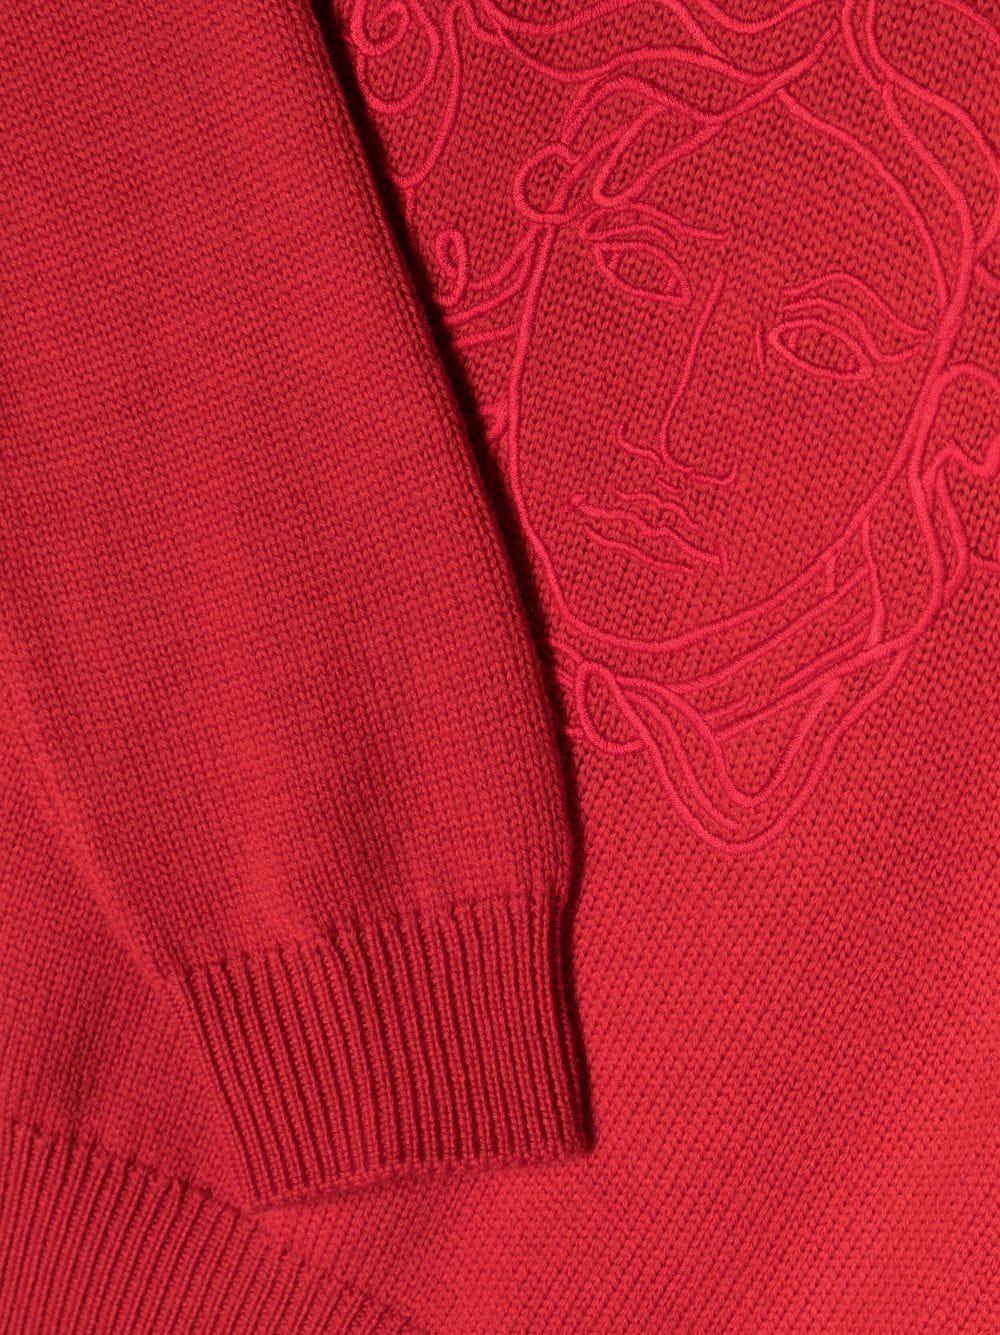 Maglione rosso bambino con ricamo